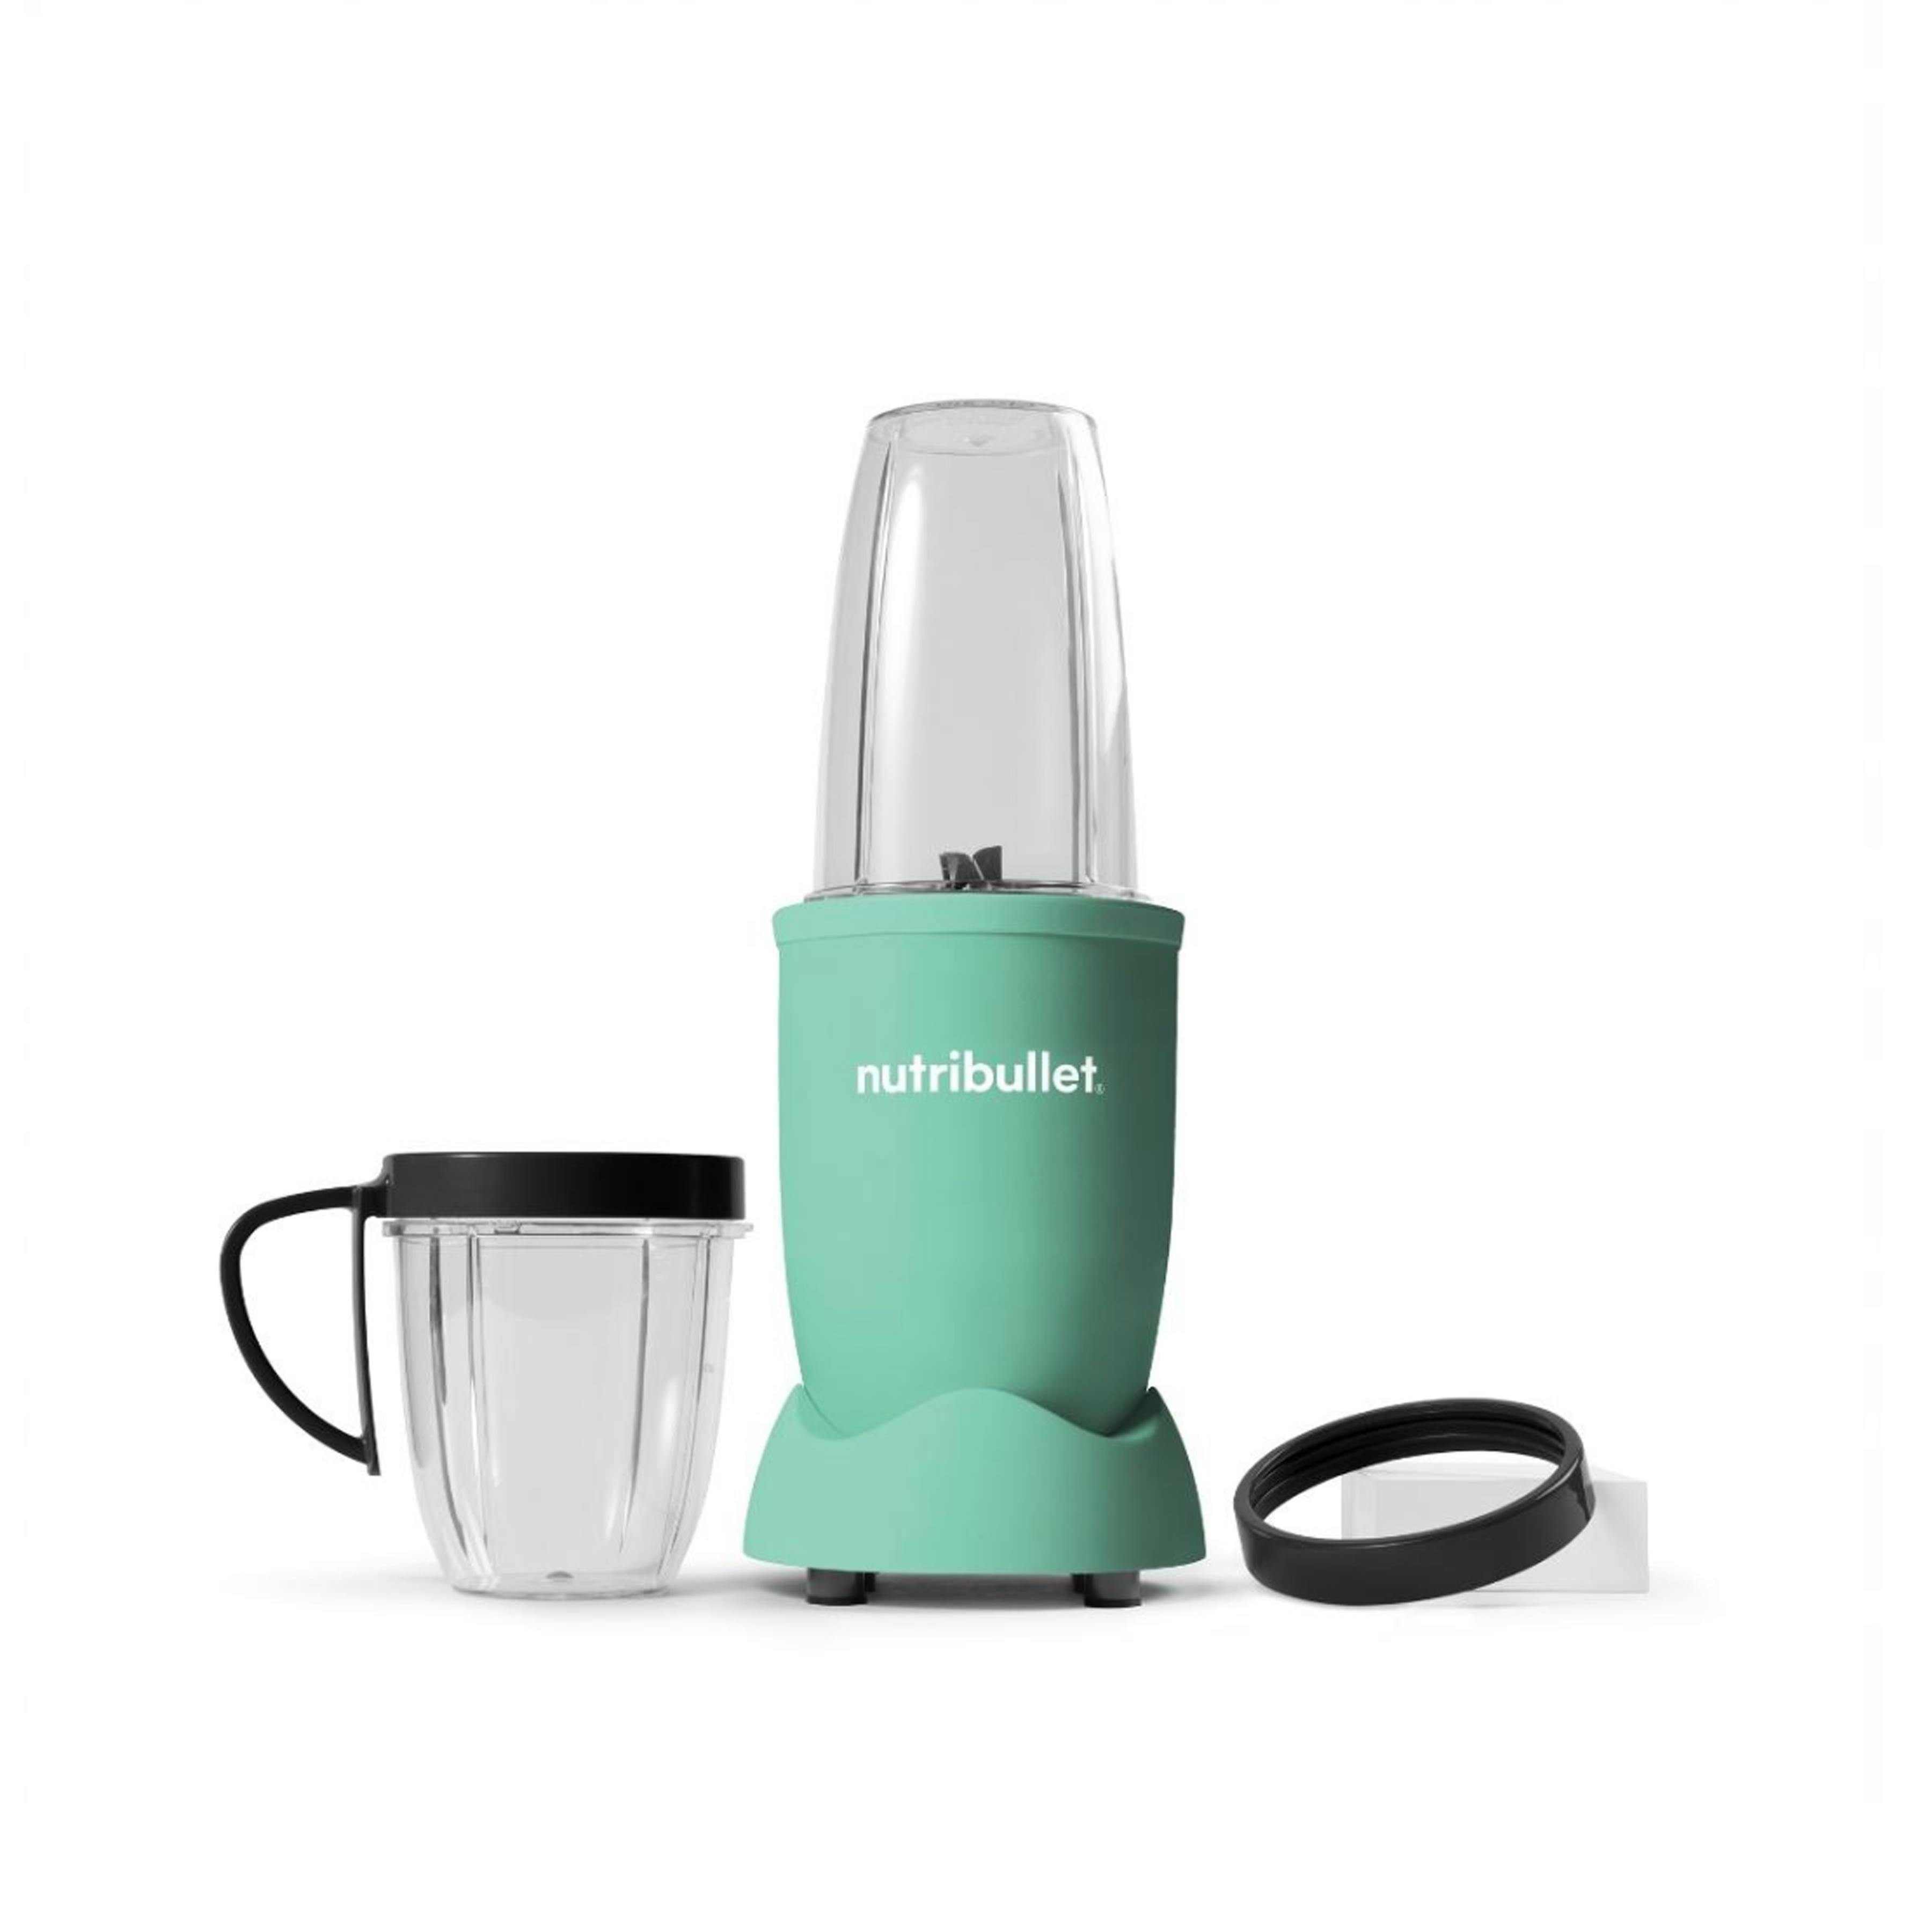 nutribullet Blender Full Size … curated on LTK